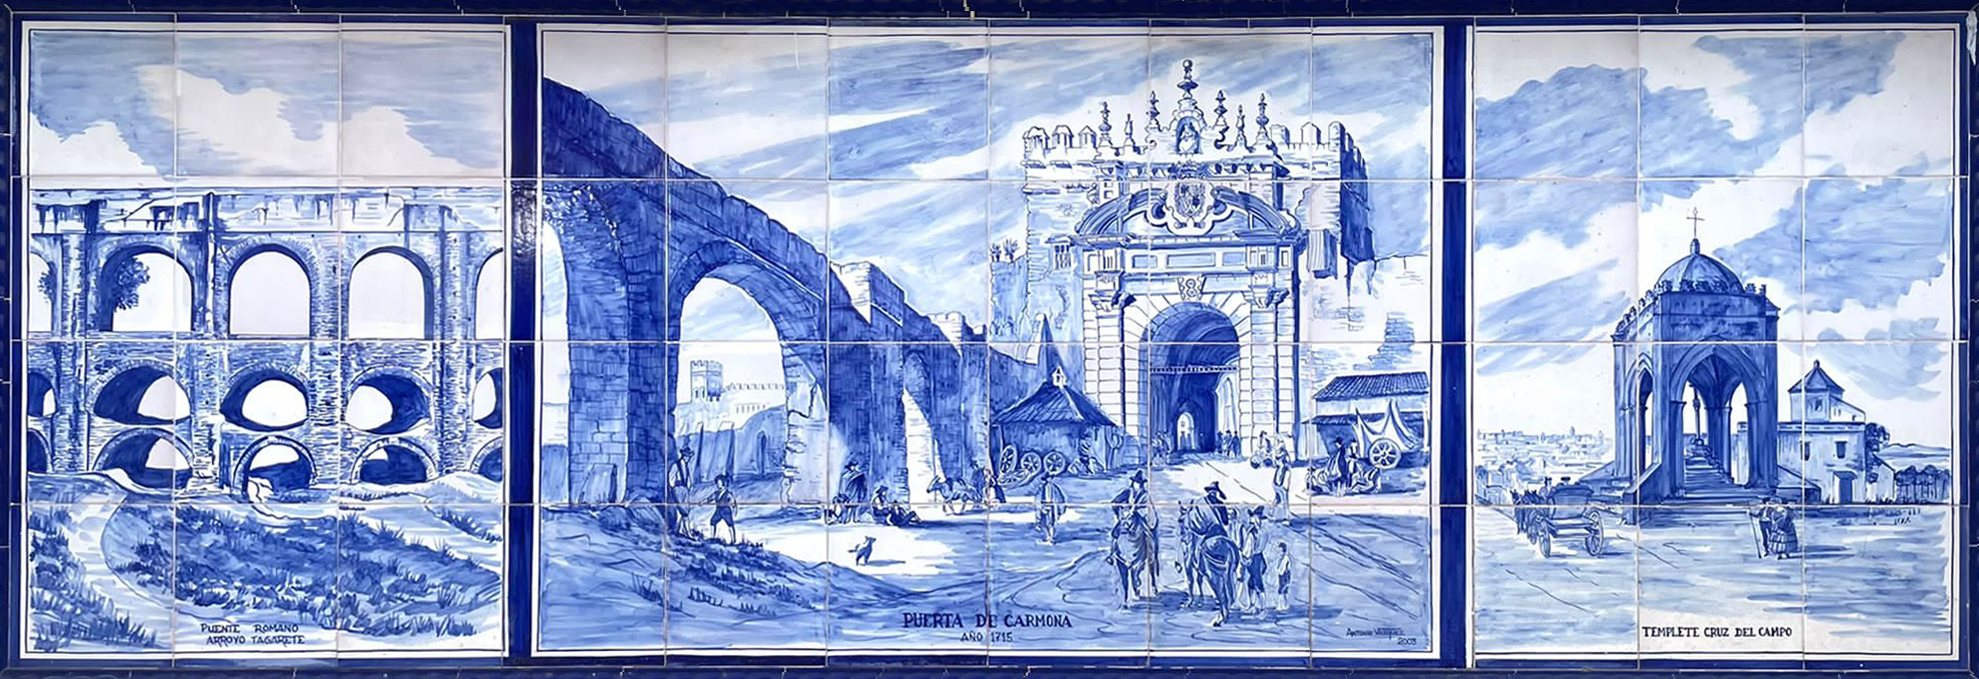 01820. Panel de azulejos con paisajes antiguos de Sevilla. Sevilla.